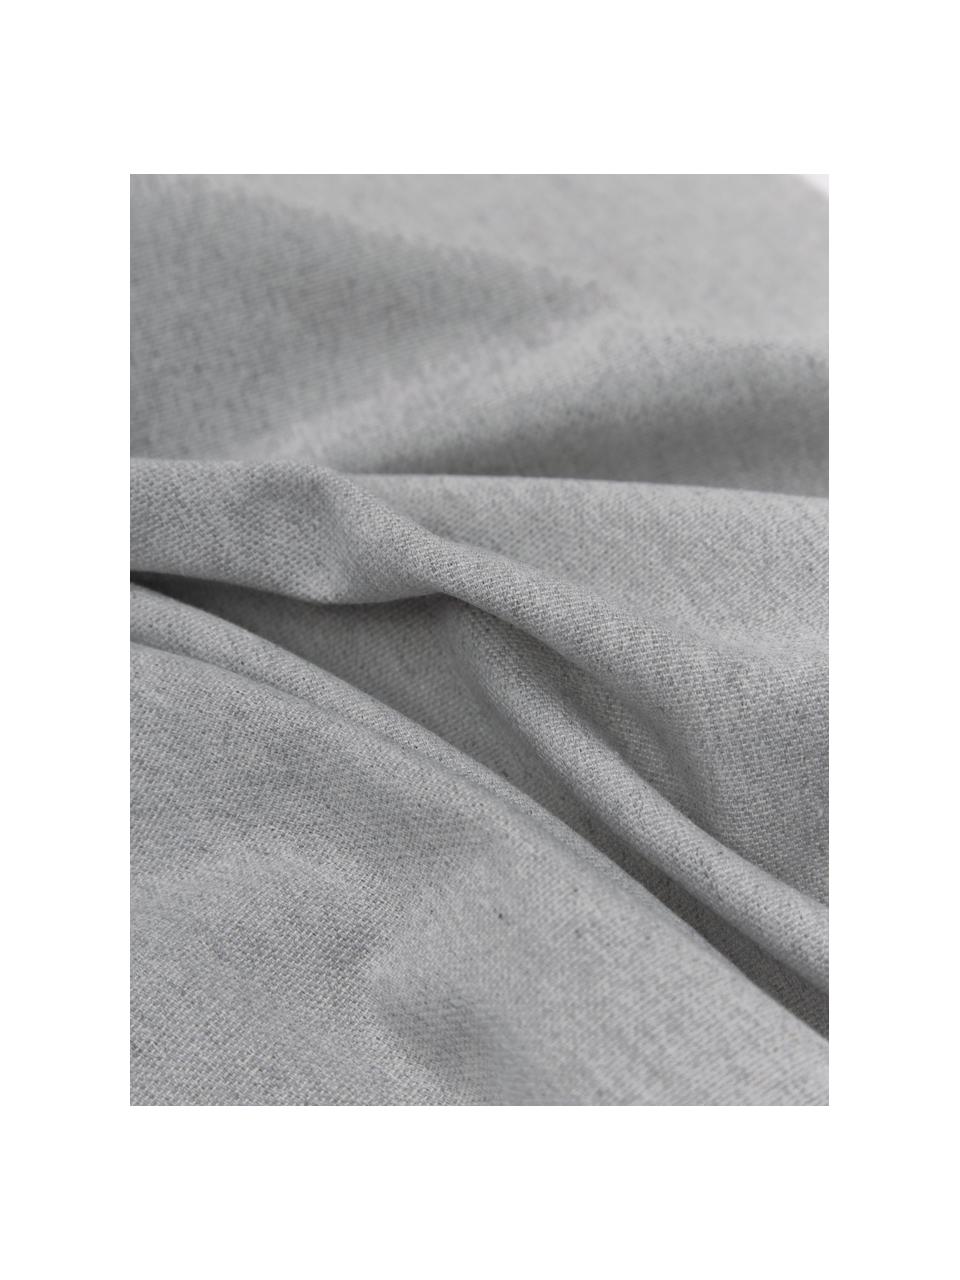 Hamamtuch St Tropez mit Streifen und Fransen, 100% Baumwolle, Grau, Weiß, B 100 x L 200 cm